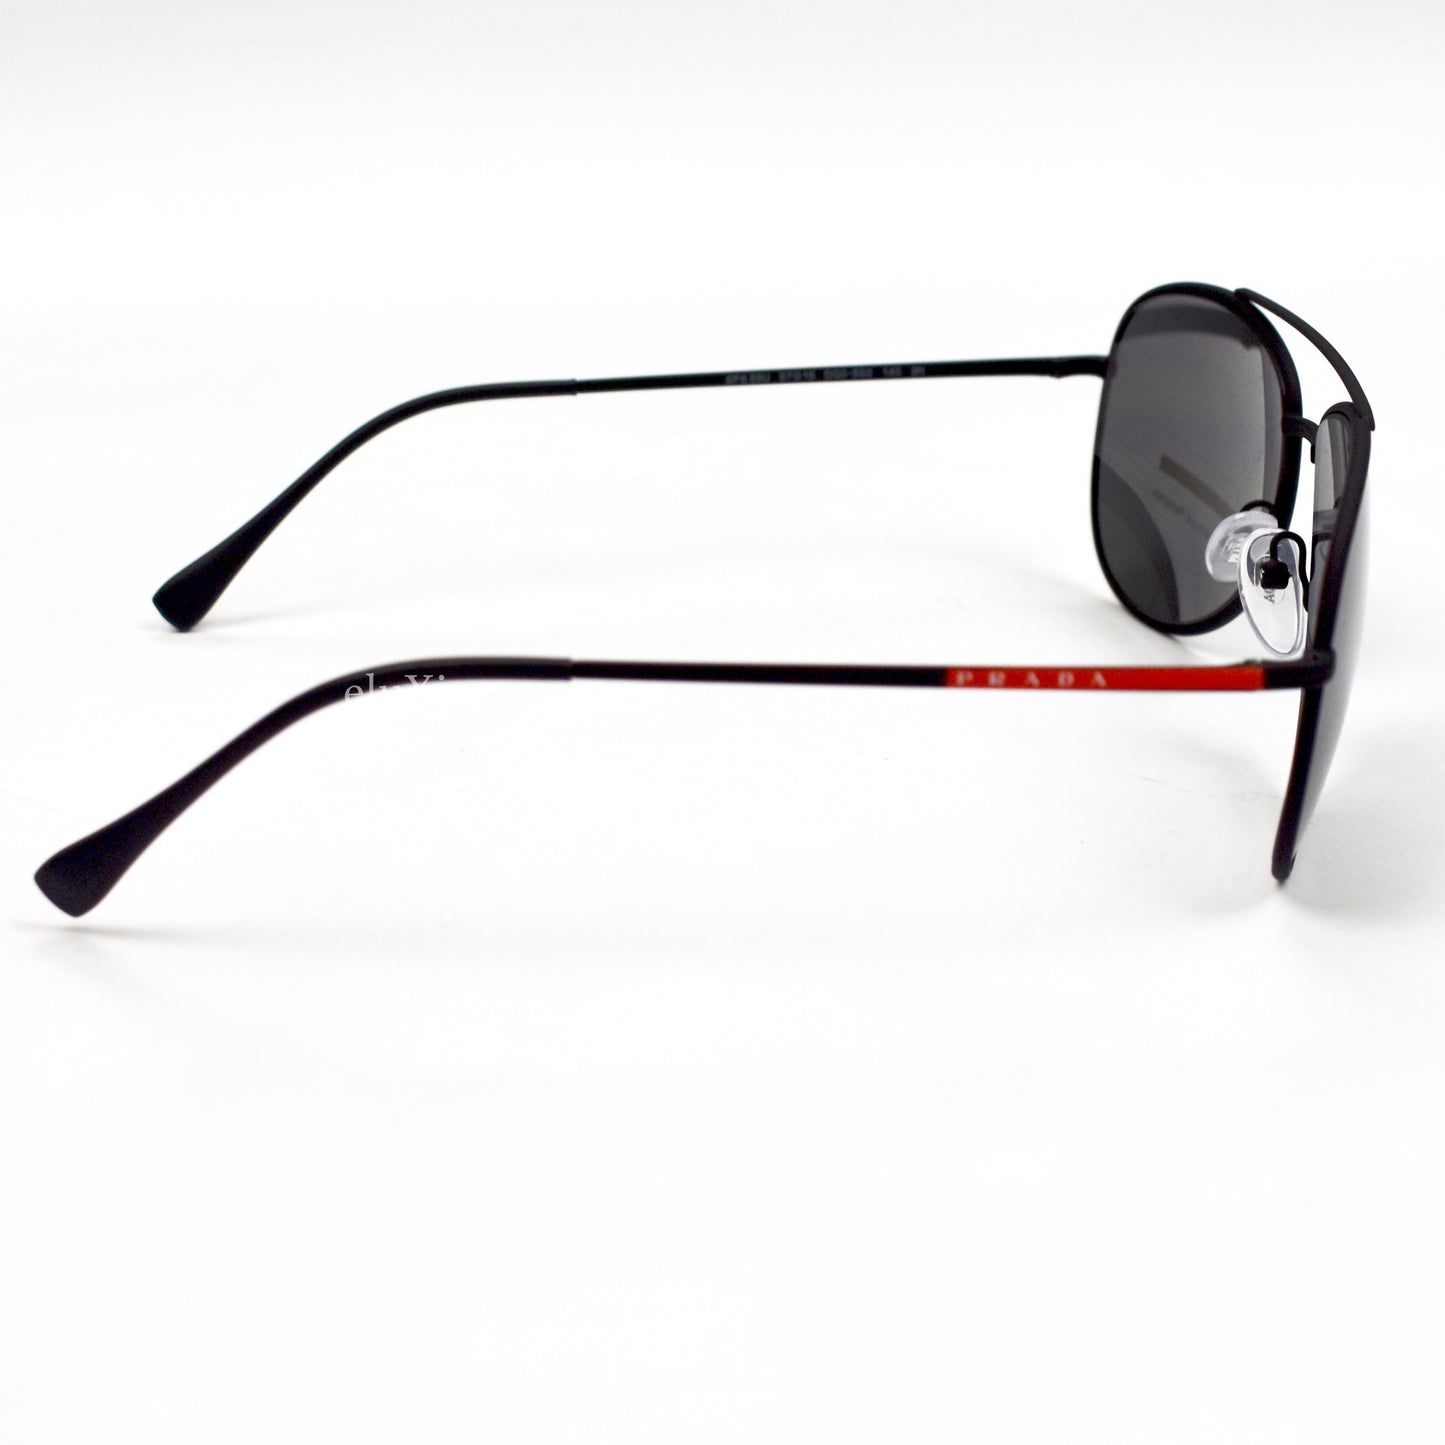 Prada - PS 55US Black Aviator Sunglasses